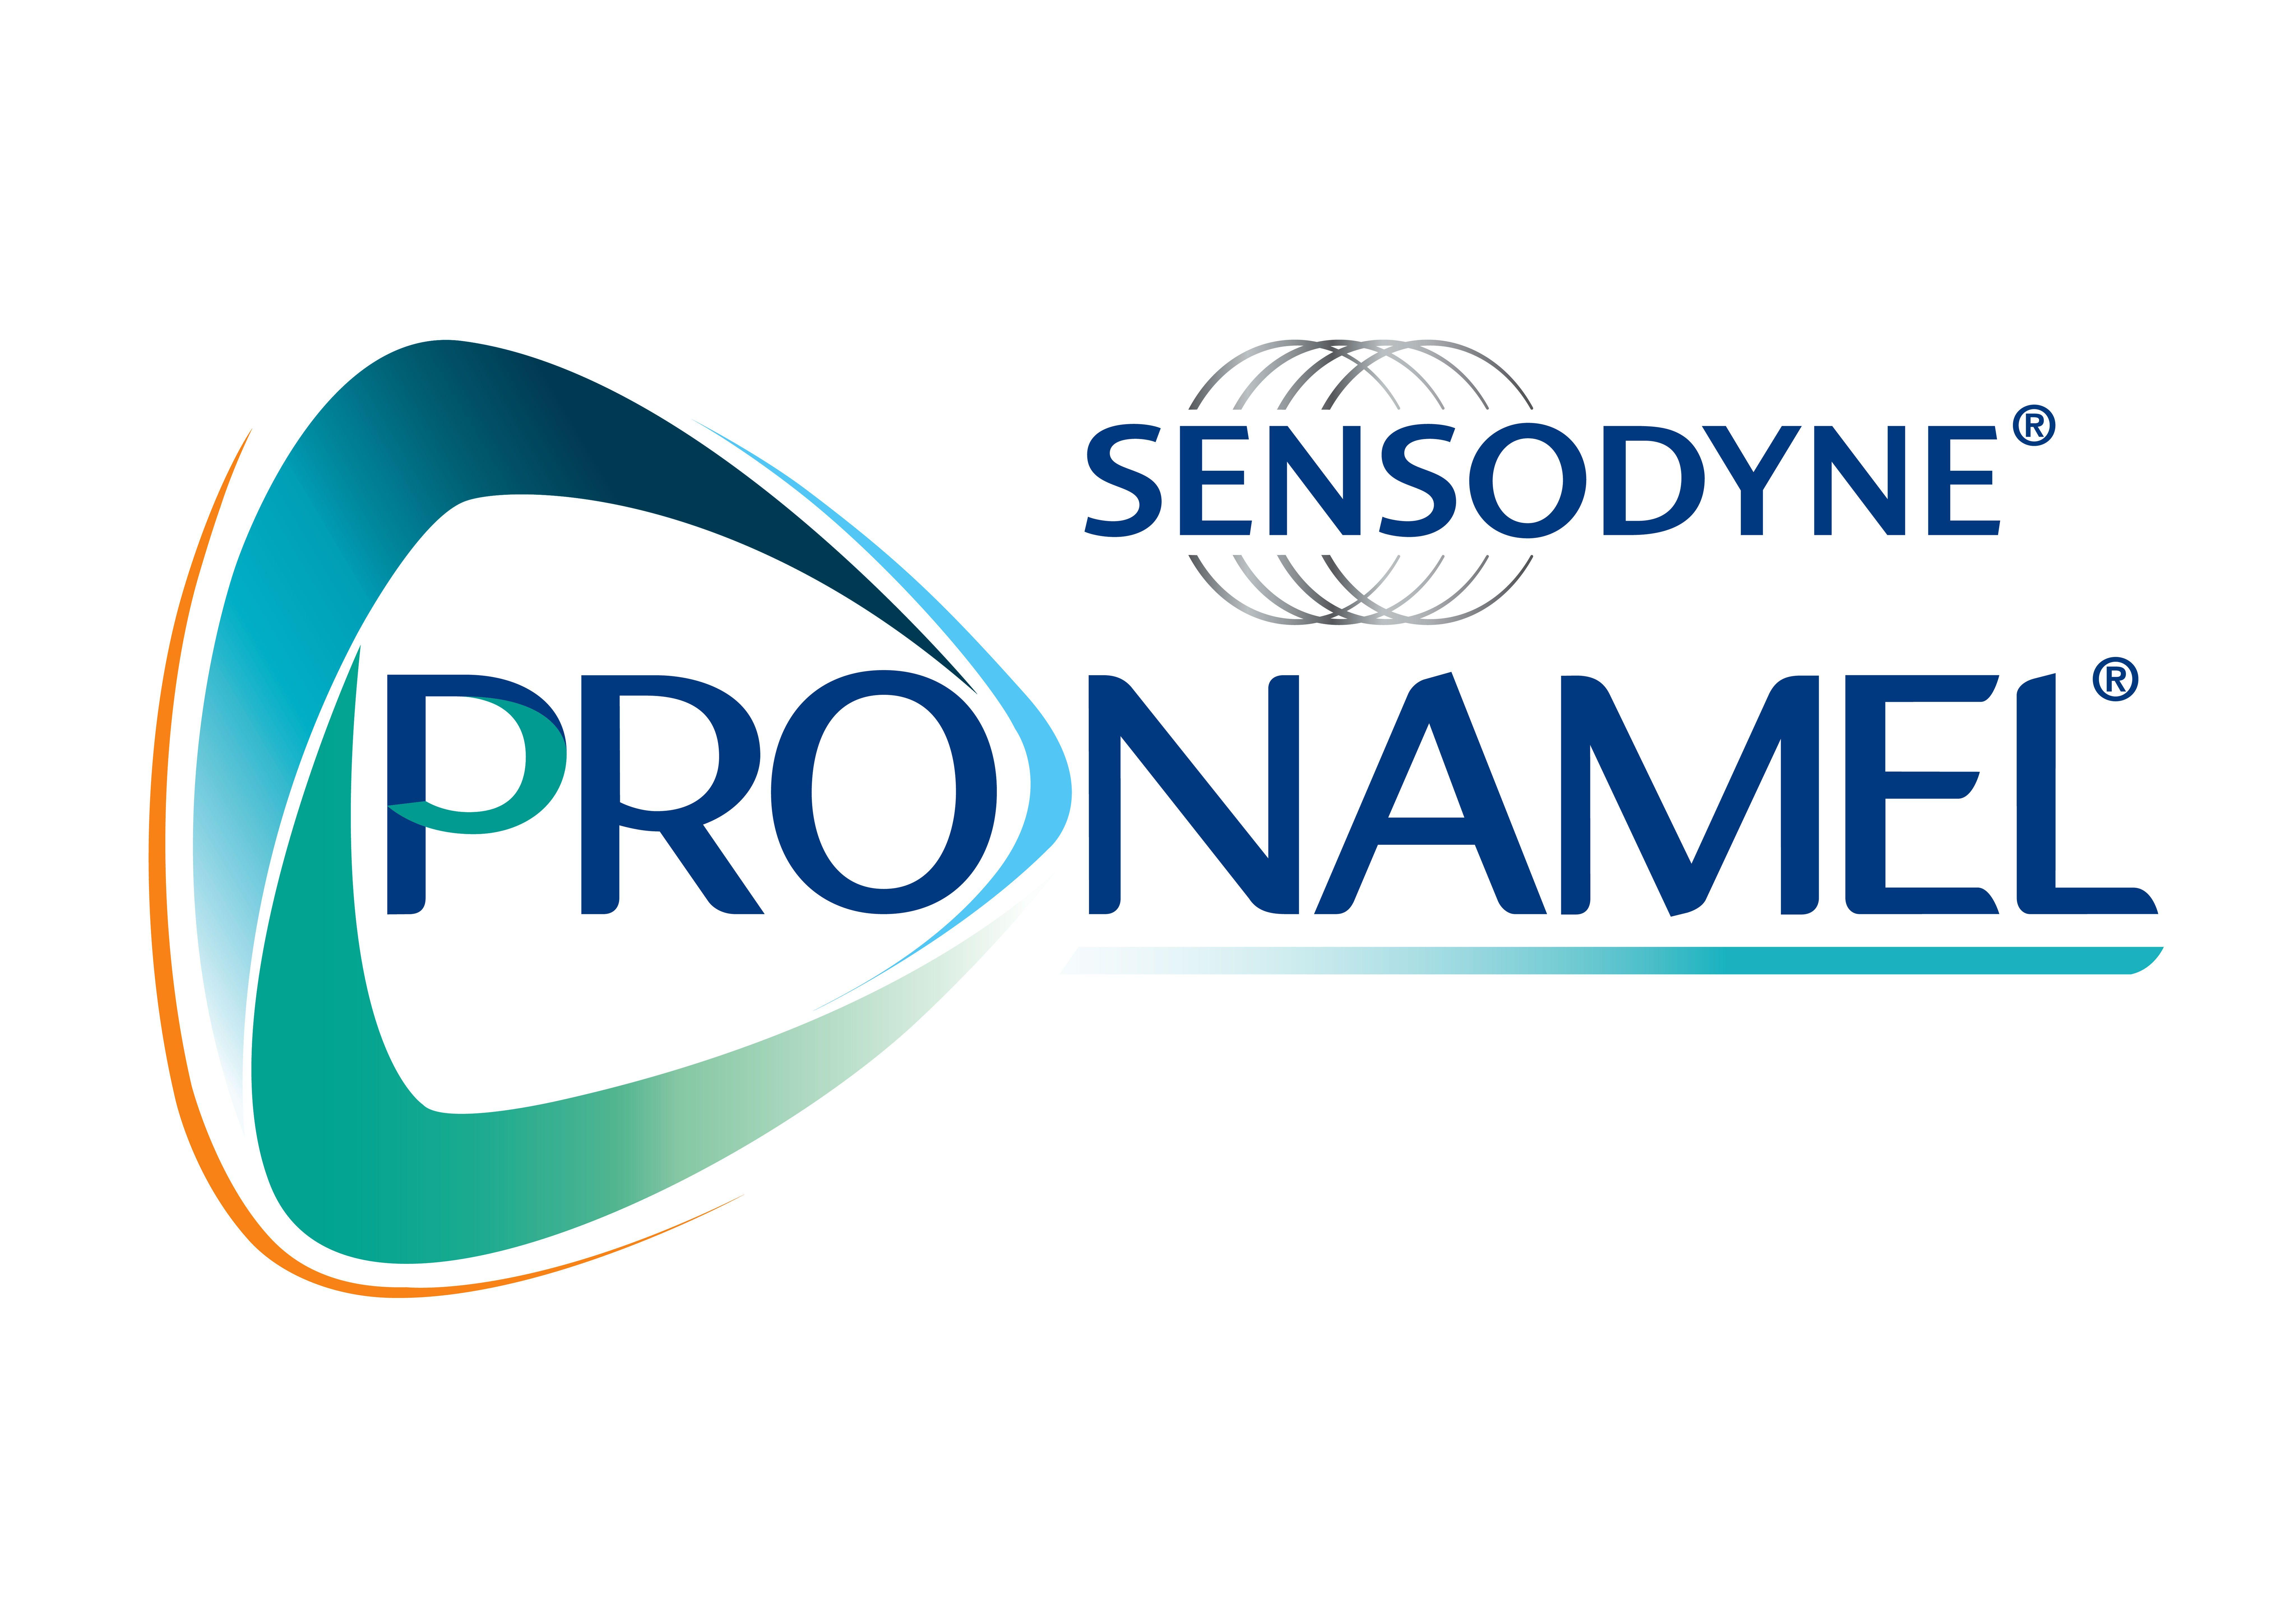 Sensodyne Logo - Sensodyne pronamel Logos